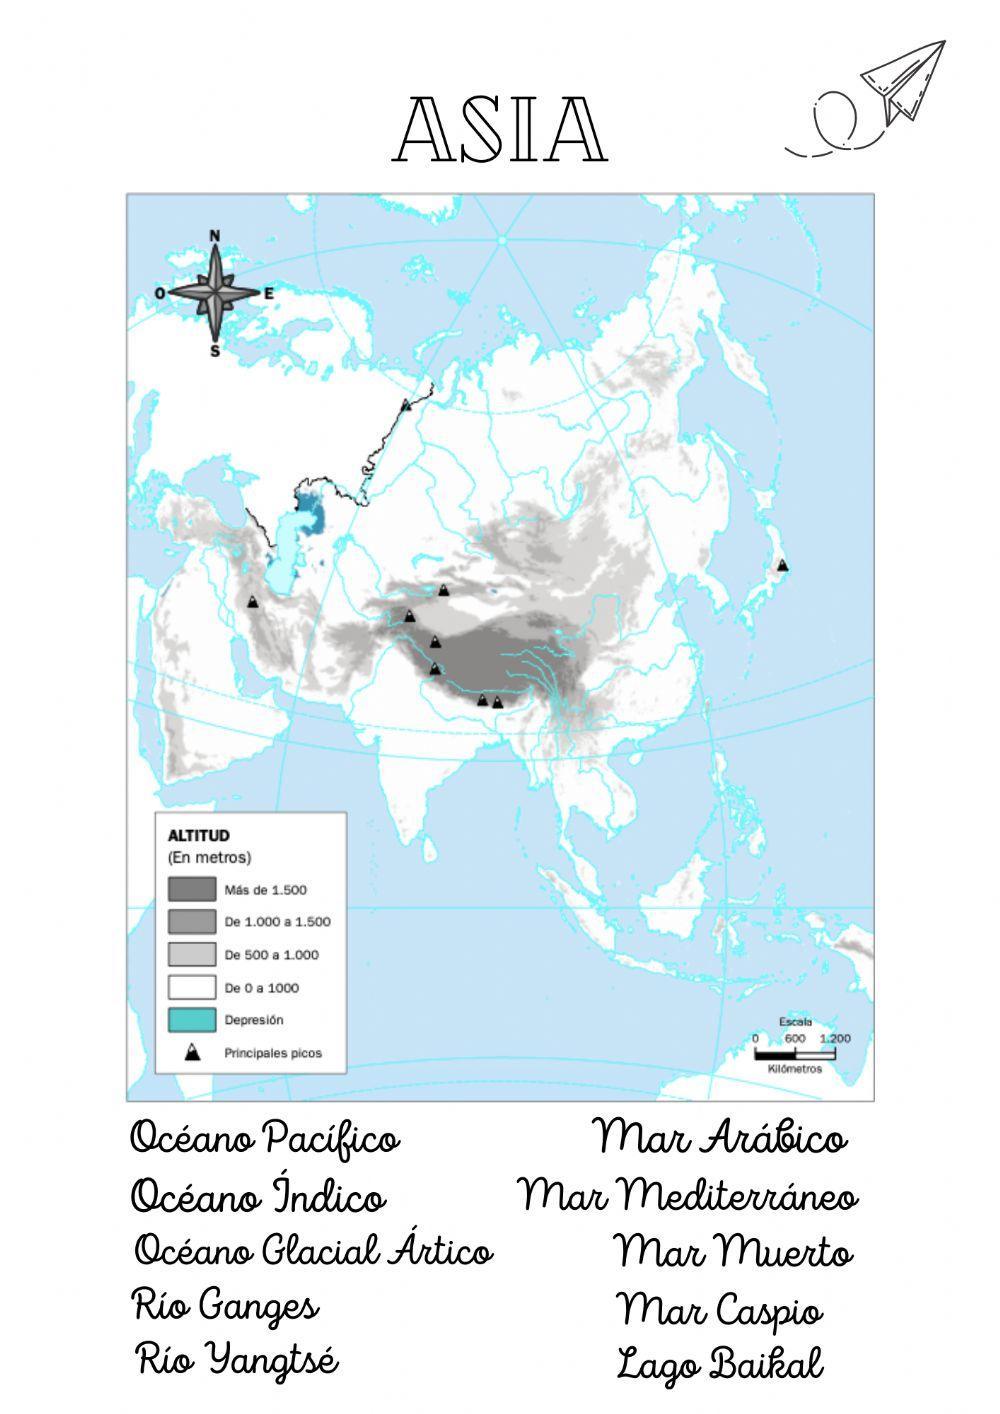 Asia. Mapa mudo fisico agua